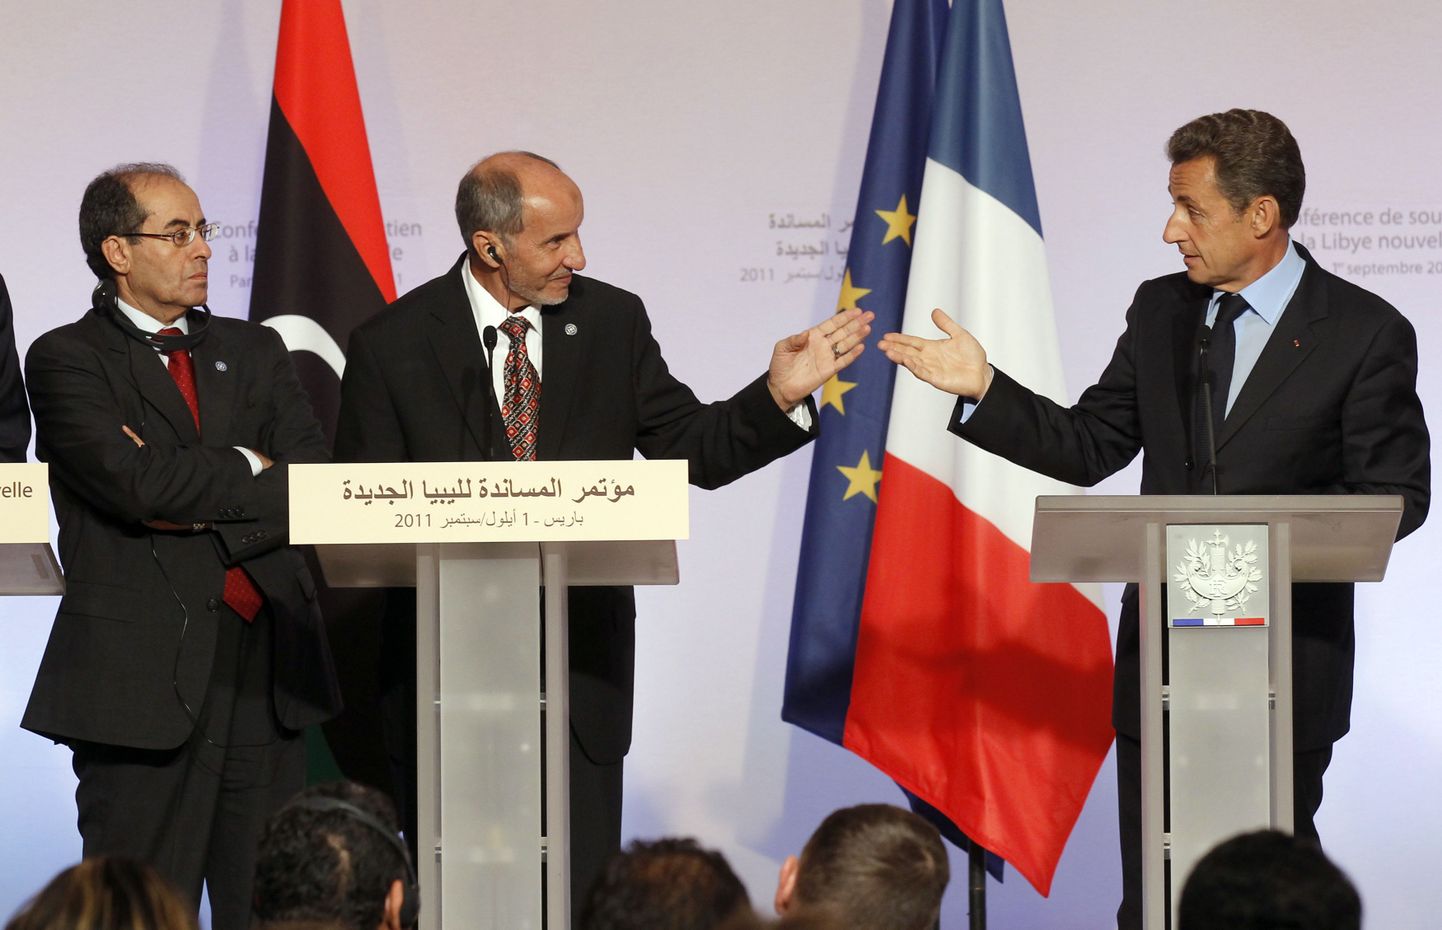 Prantsusmaa president Nicolas Sarkozy paremal), Liibüa rahvusliku üleminekunõukogu esimees Mustafa Abdel Jalil (keskel) ja Liibüa rahvusliku üleminekunõukogu juht Mahmoud Jibril(vasakul)eilsel Pariisi konverentsil.